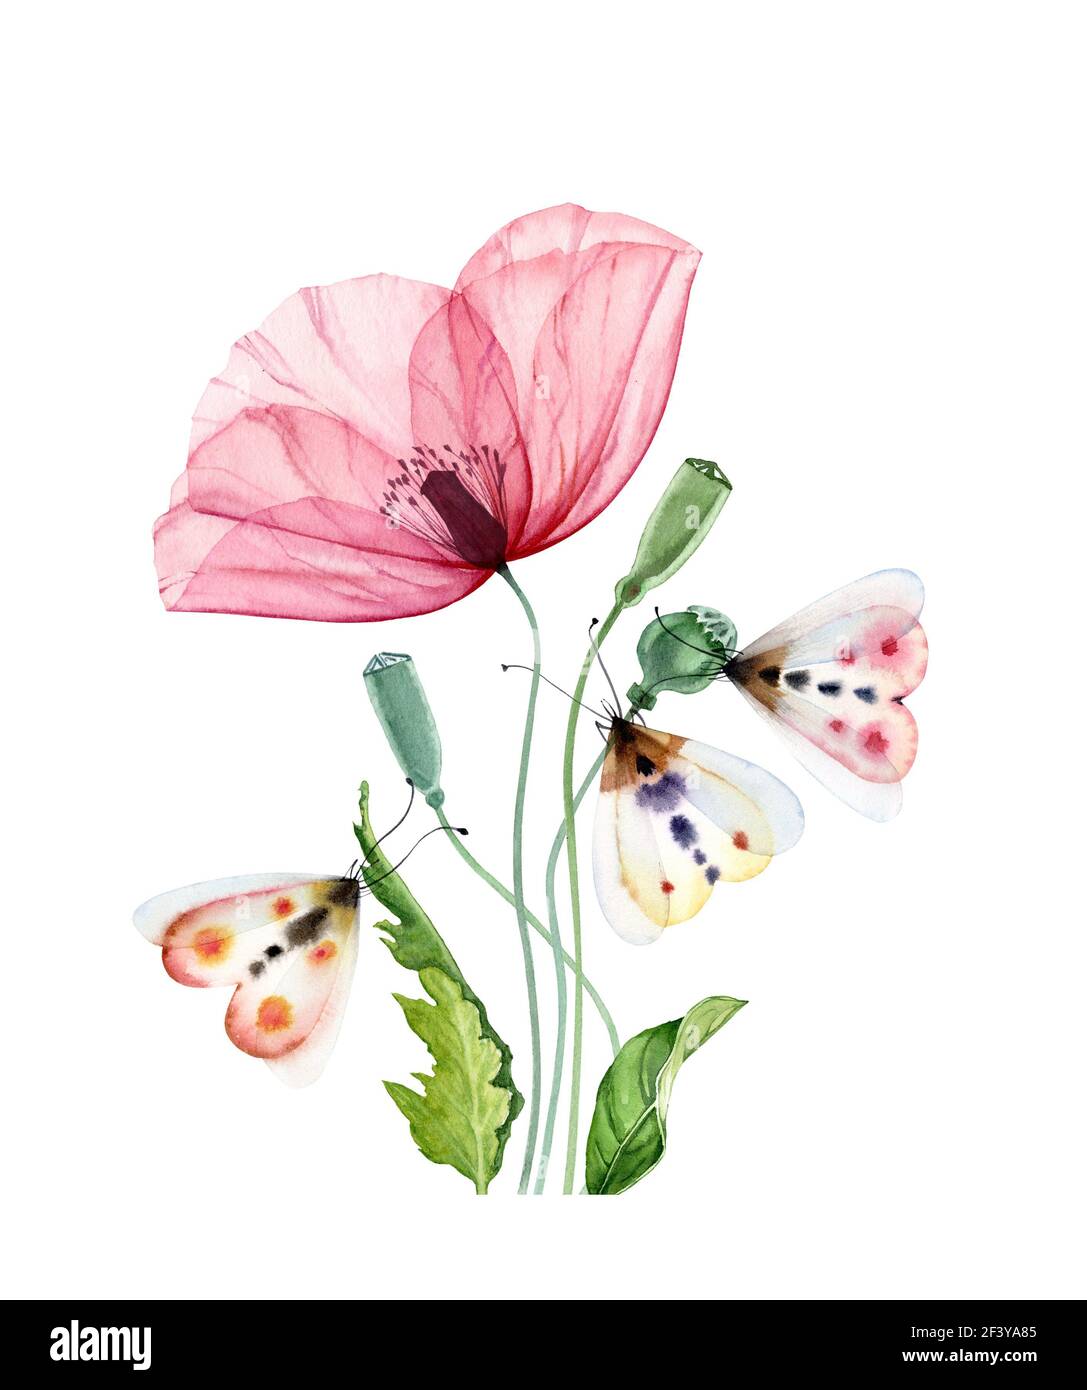 Aquarell Mohn Blume mit Motte. Große transparente rosa Blume mit drei bunten Schmetterlingen. Hand bemalt drucken bereit abstrakte Kunstwerk. Botanisch Stockfoto